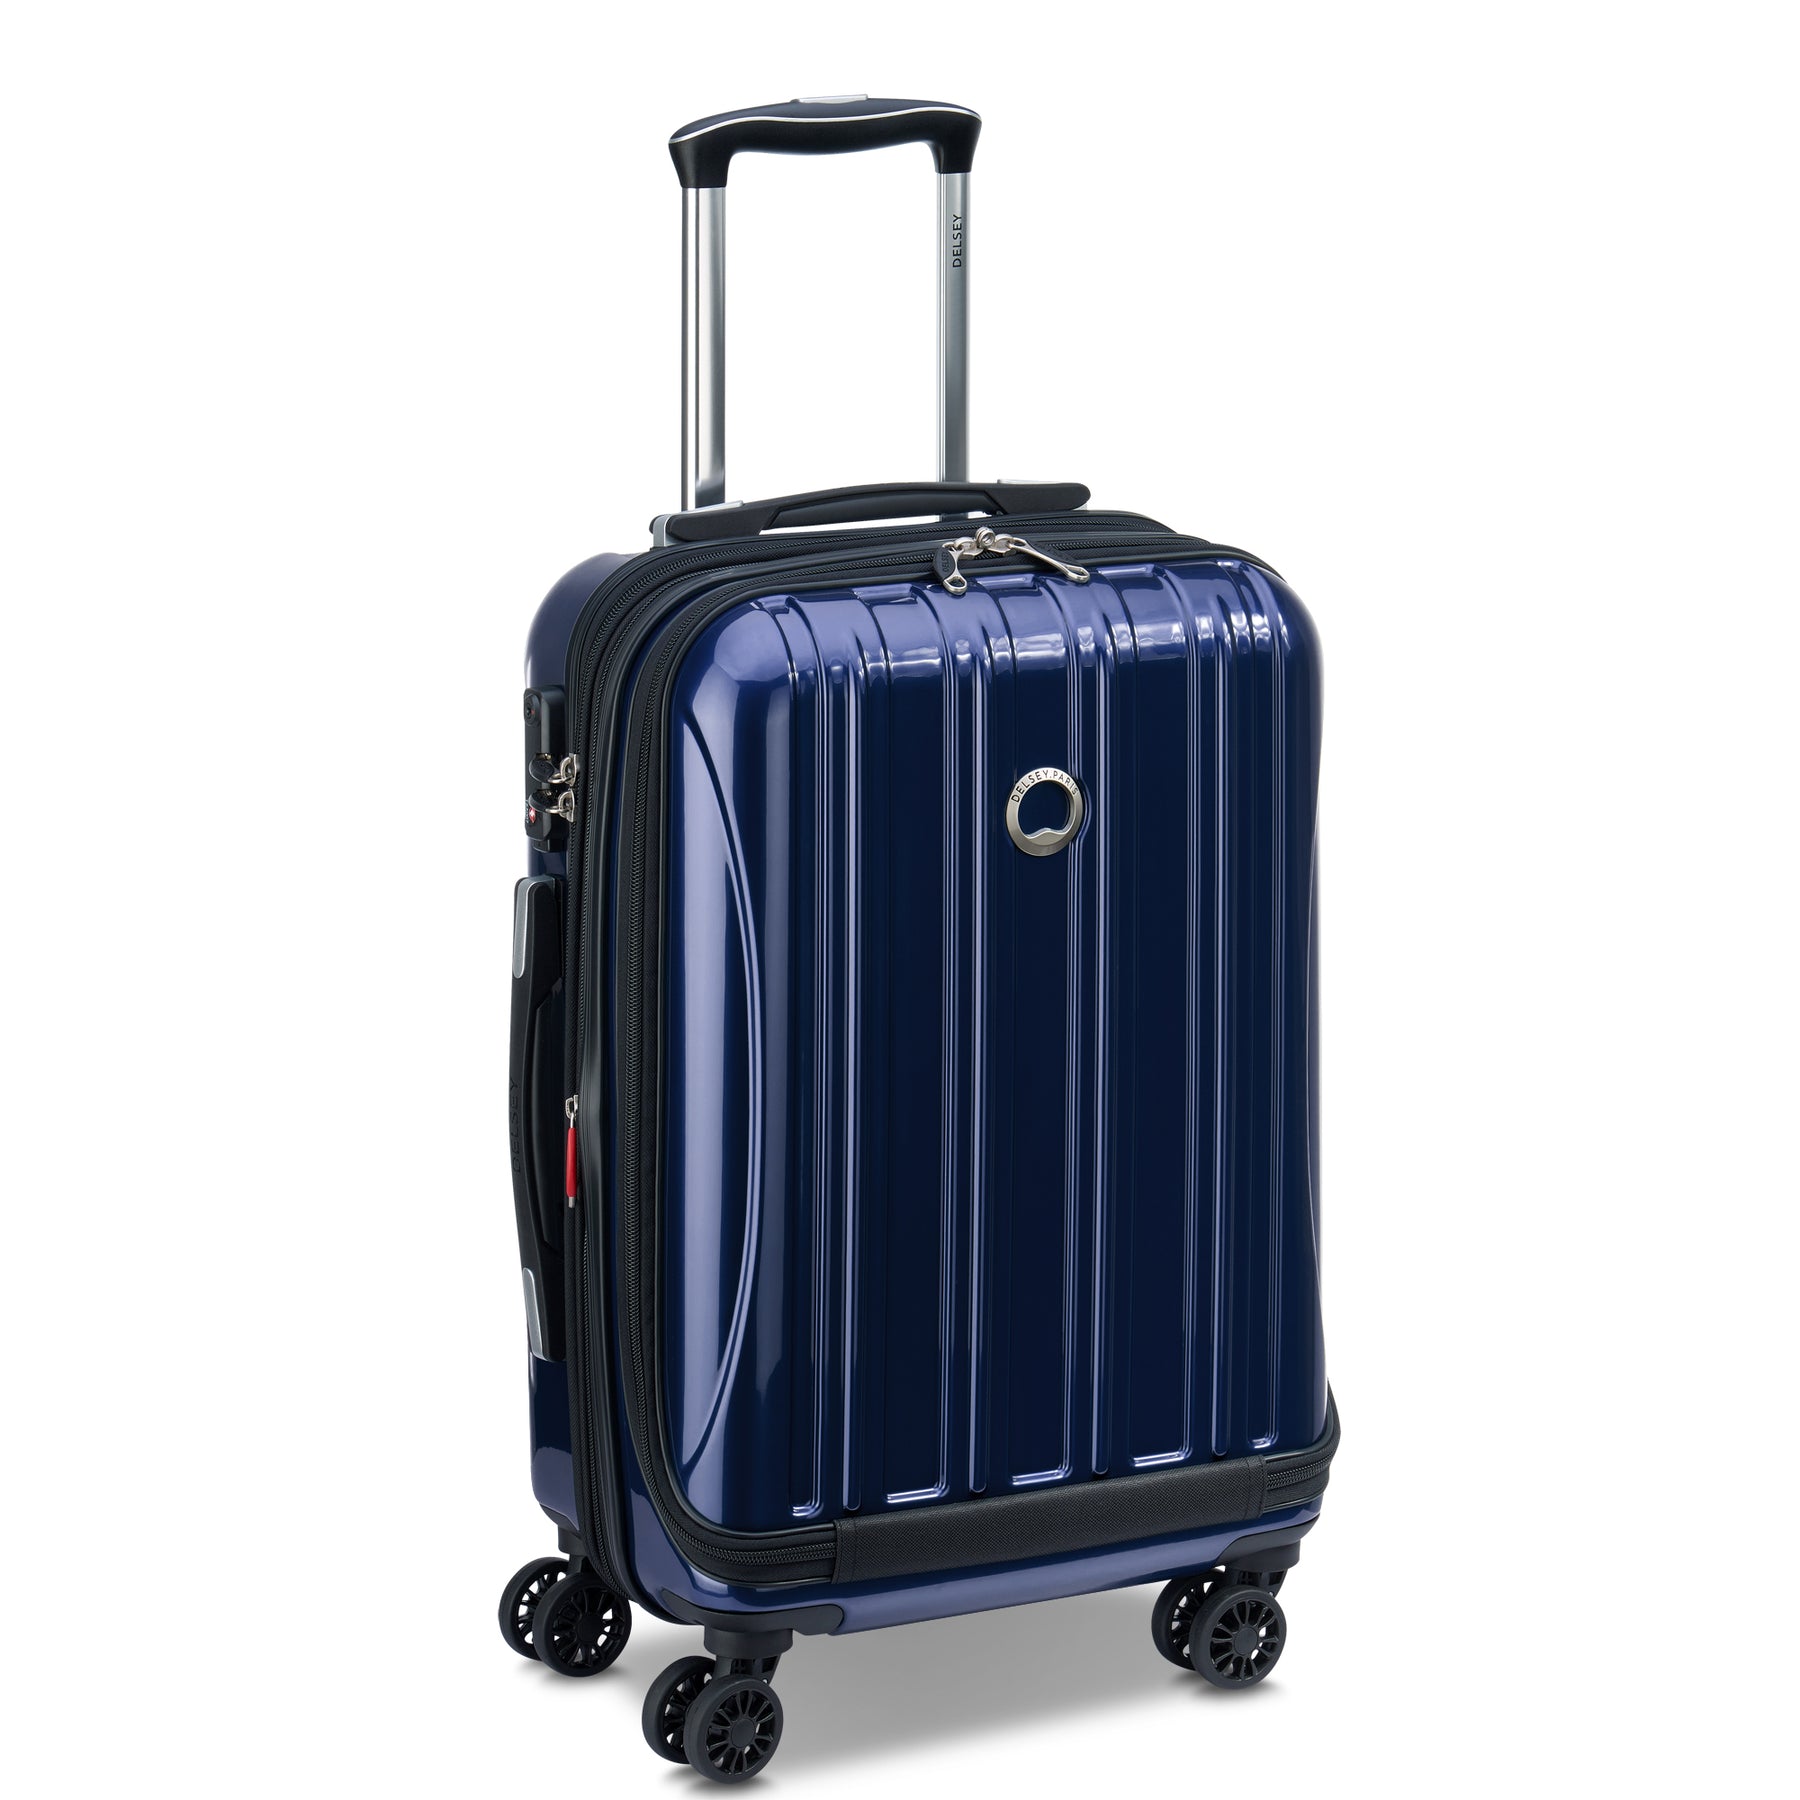 DELSEY デルセー HELIUM AERO スーツケース 機内持ち込み可能 - バッグ